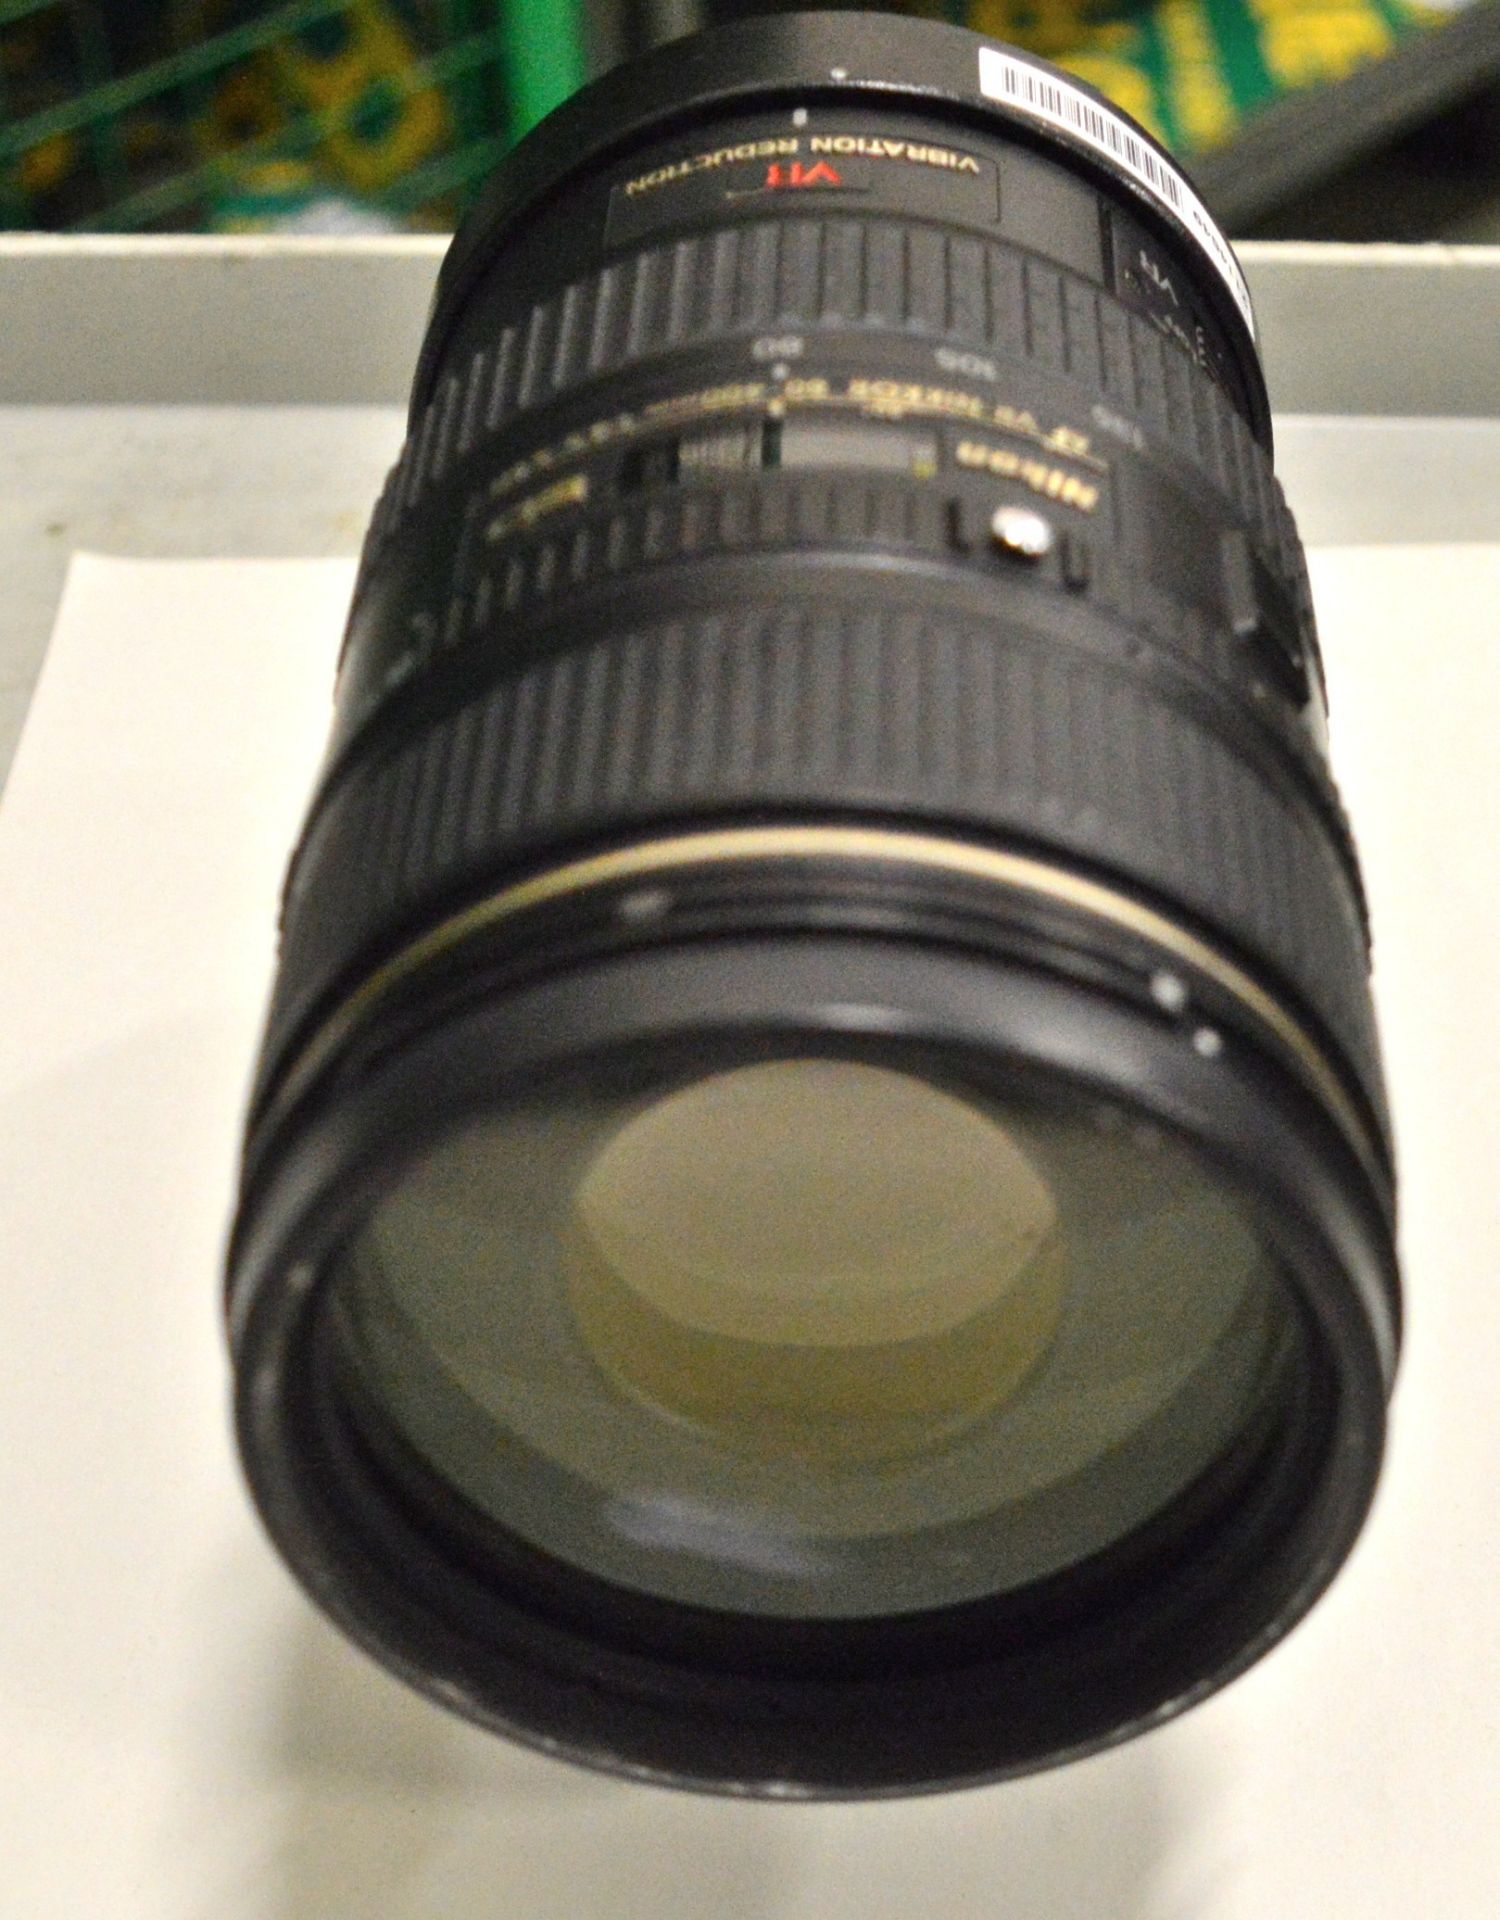 Nikon Lens AF-Nikkor 80-400mm 1:4.5-5.6D - Serial No. 239811. - Image 5 of 6